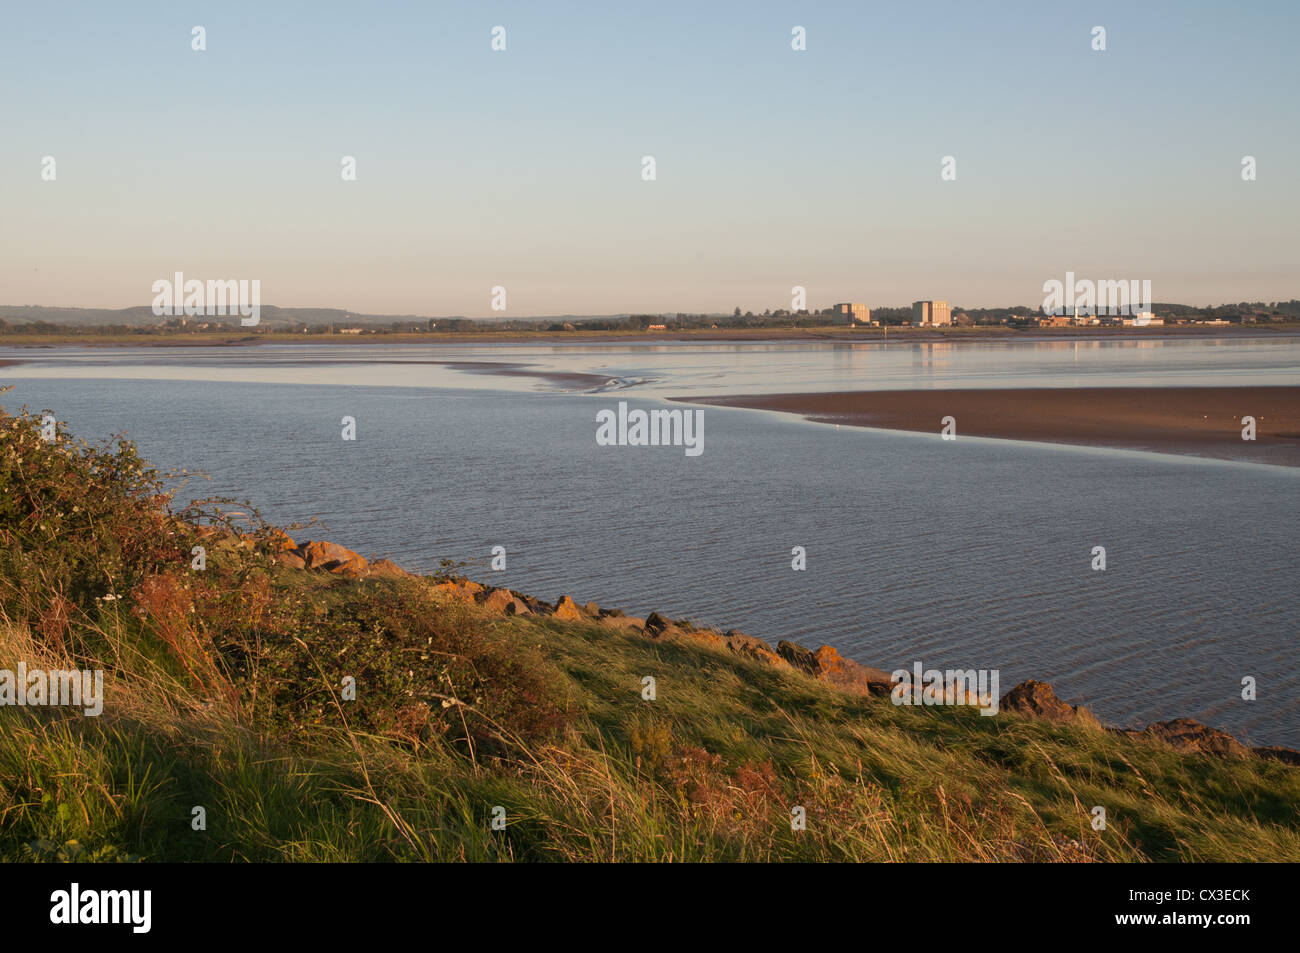 Fiume Severn a bassa marea in condizioni di scarsa luce solare con banca erbosa power station in background Foto Stock